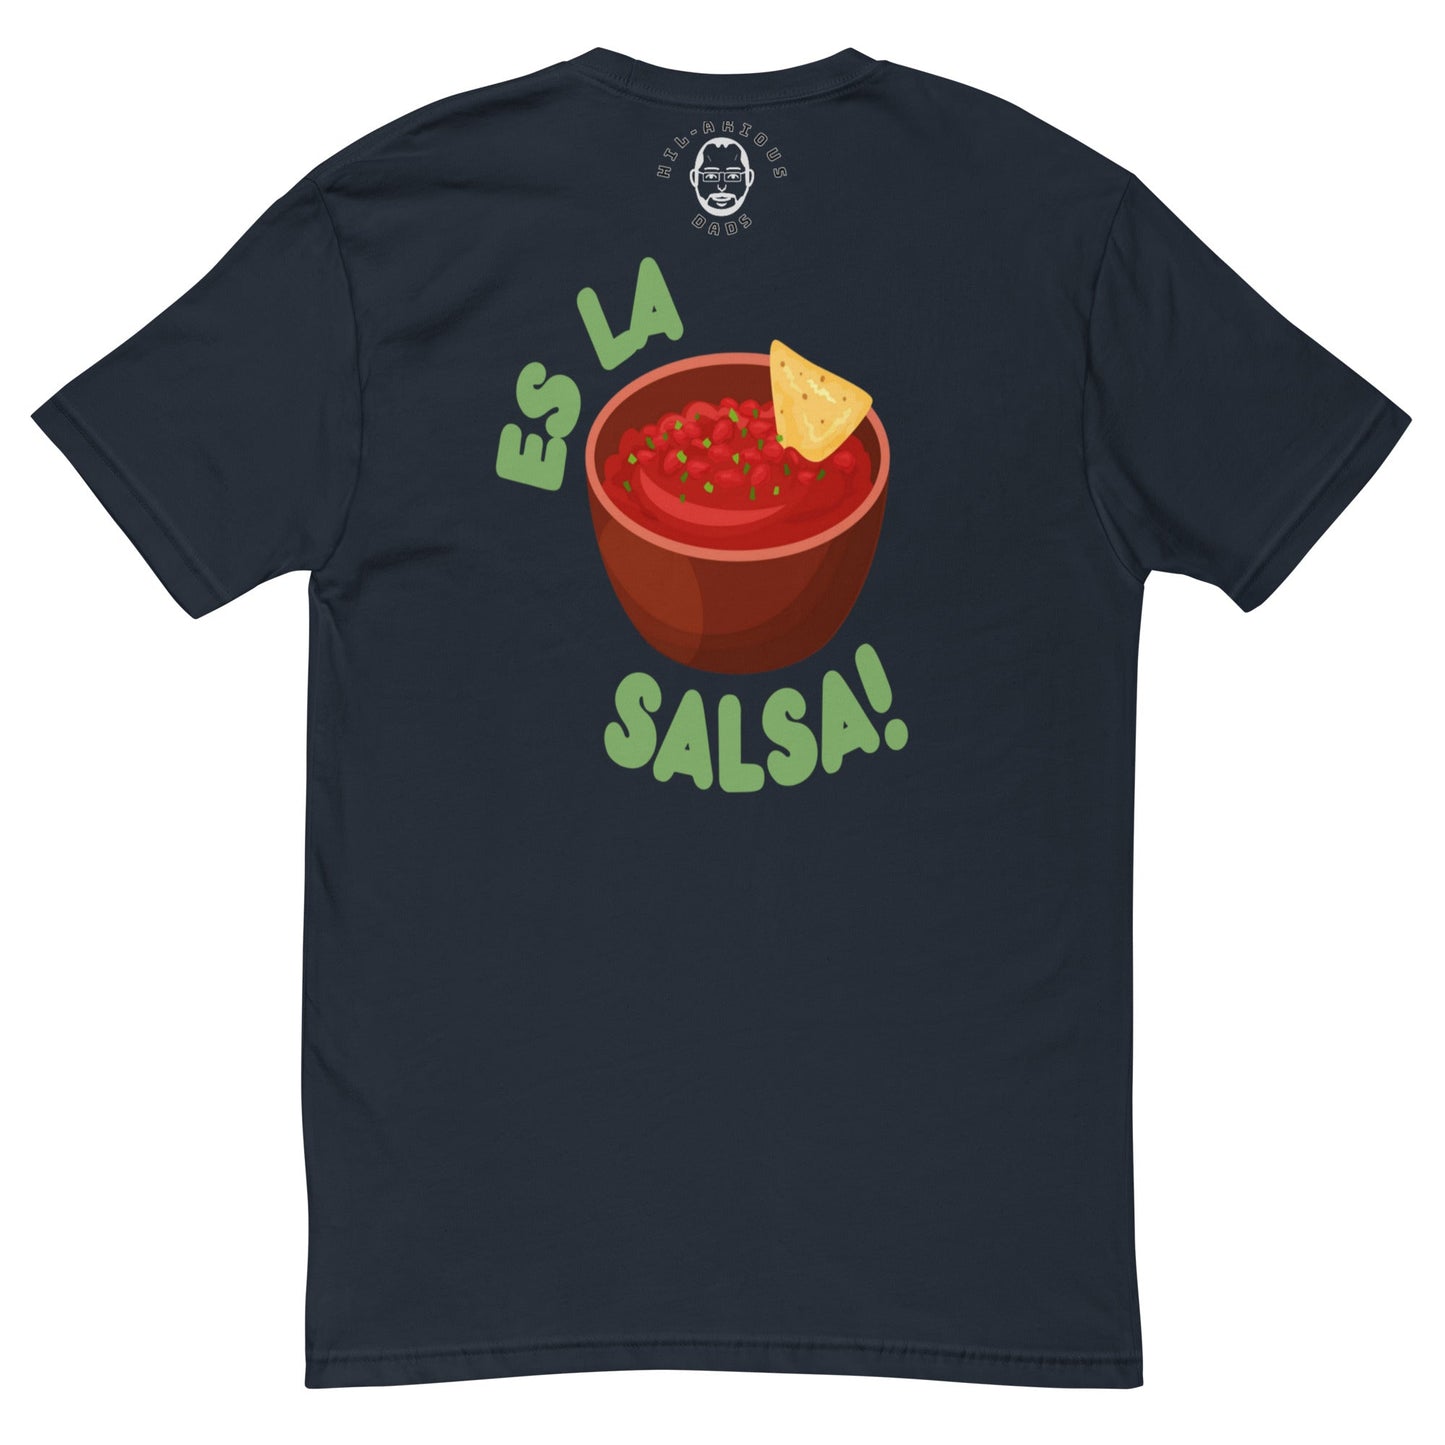 Cuál es el baile favorito del tomate?-T-shirt - Hil-arious Dads